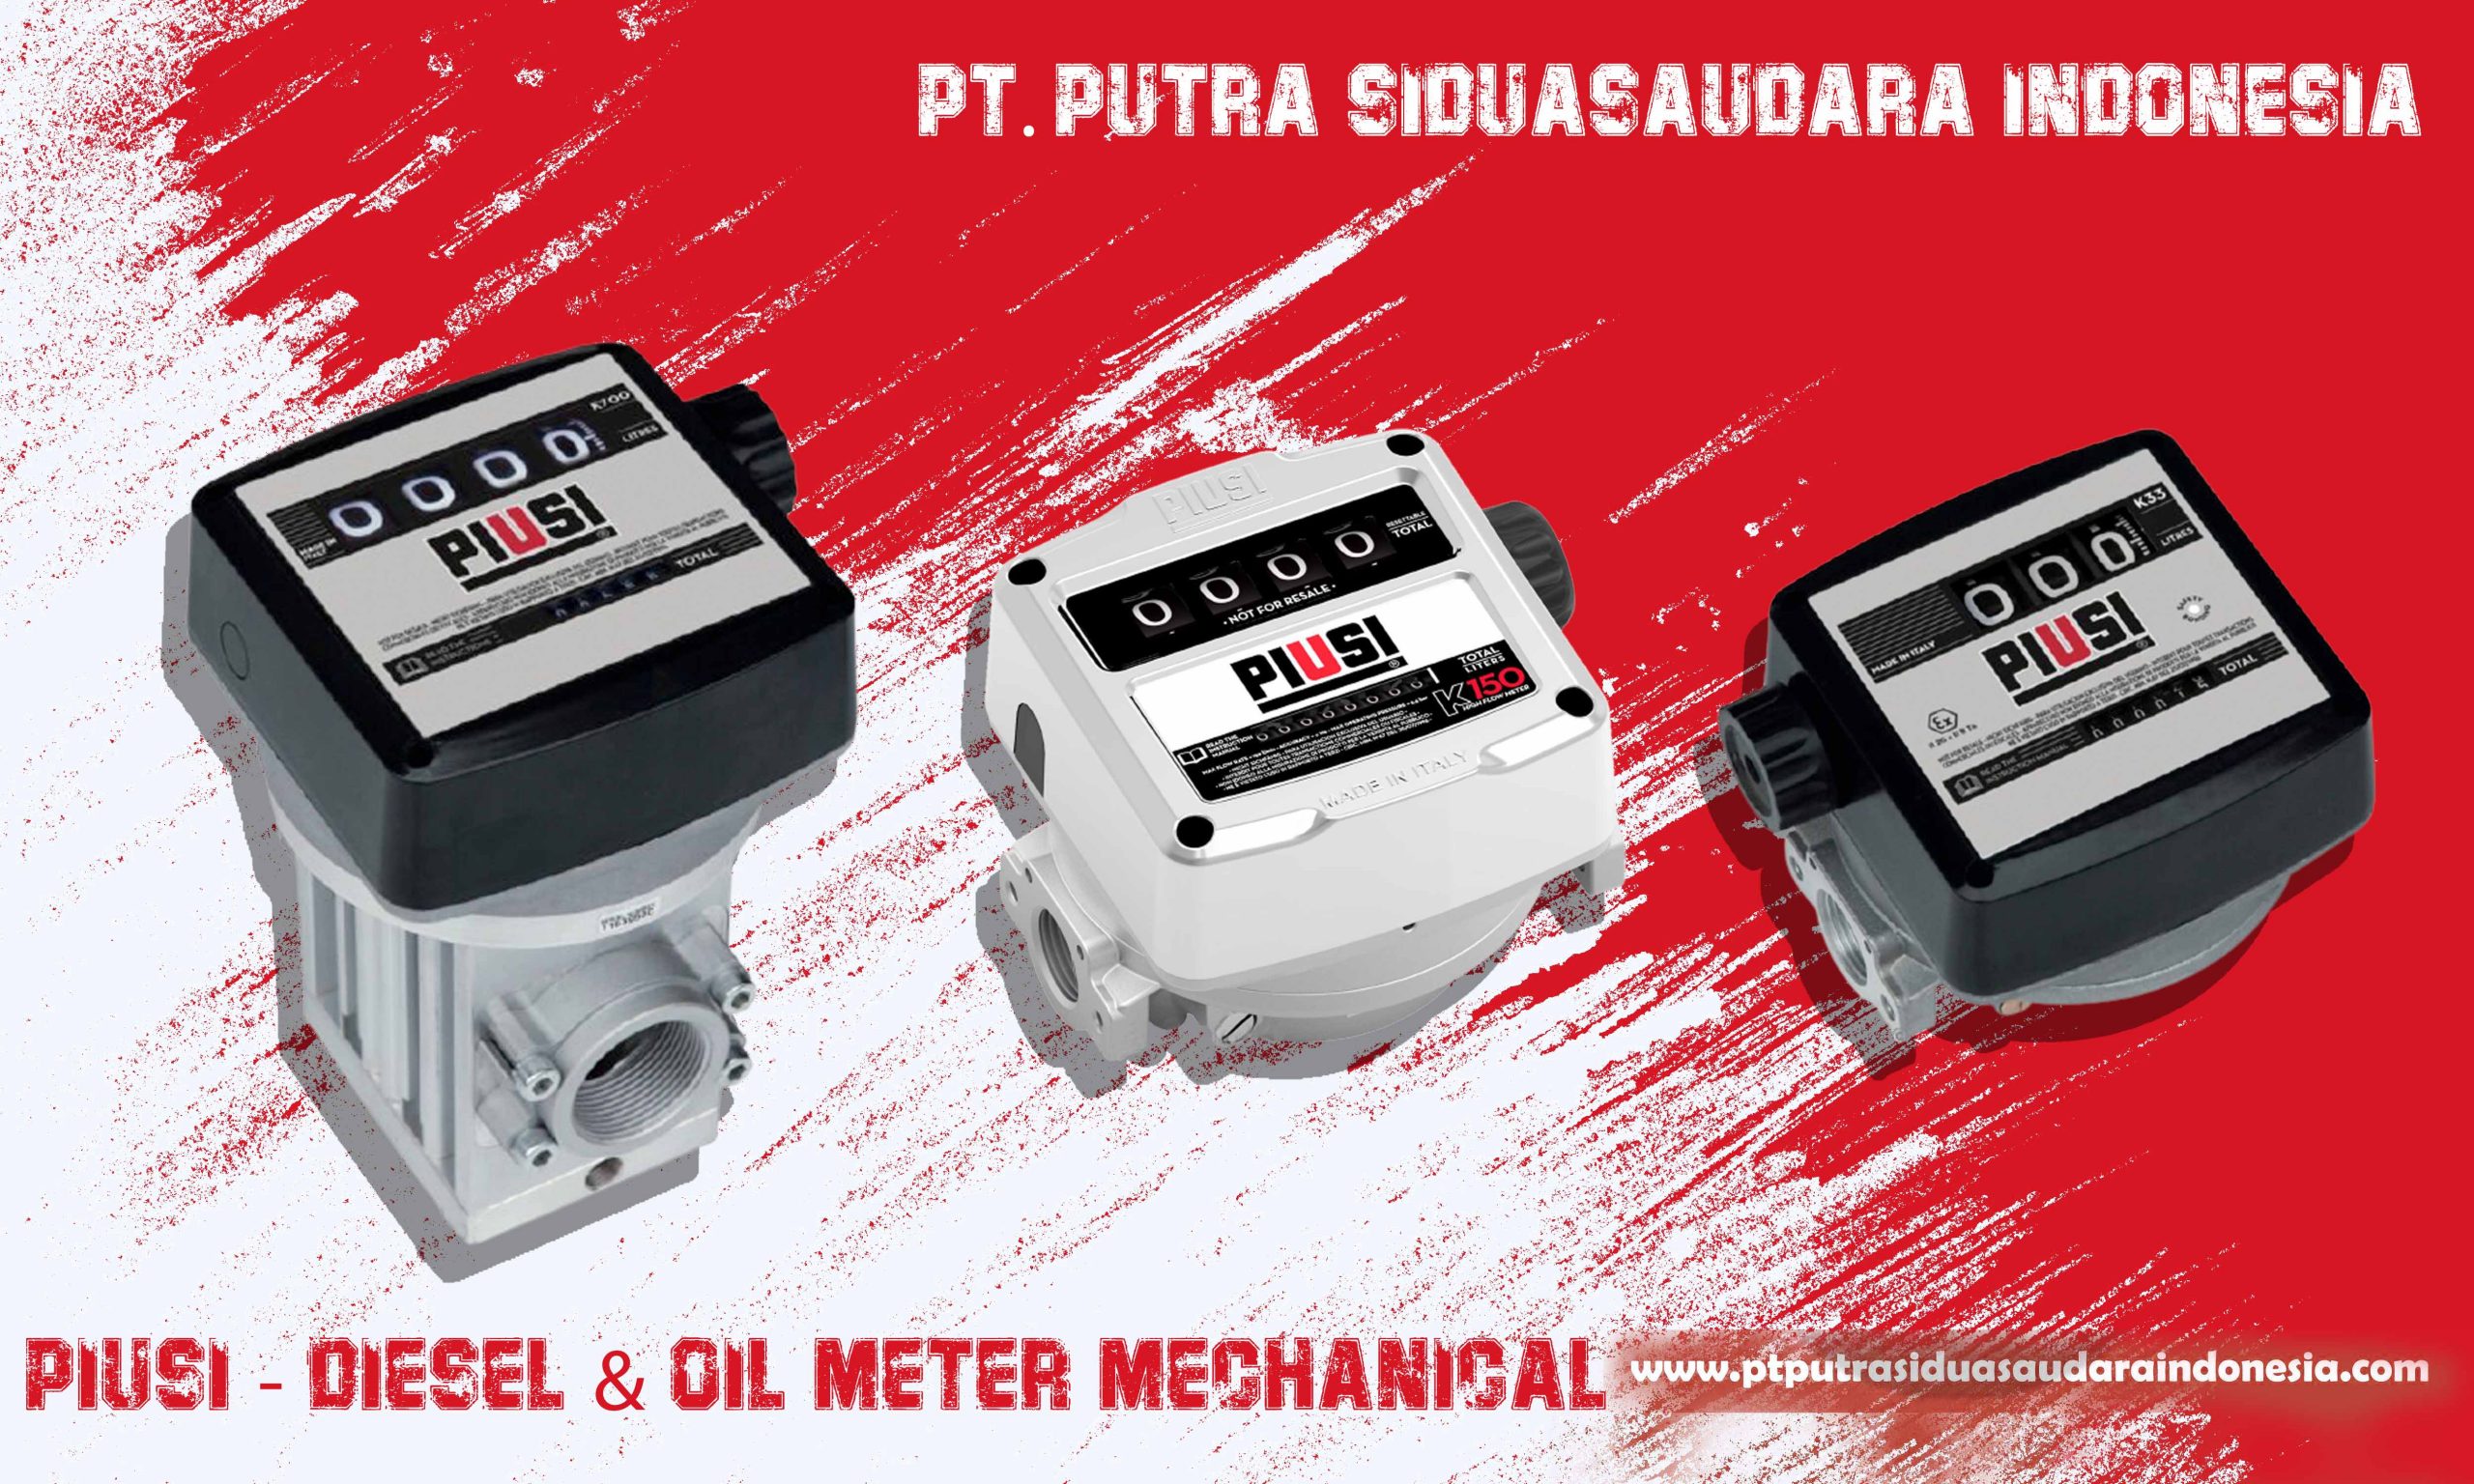 piusi-diesel & oil meter Mechanical